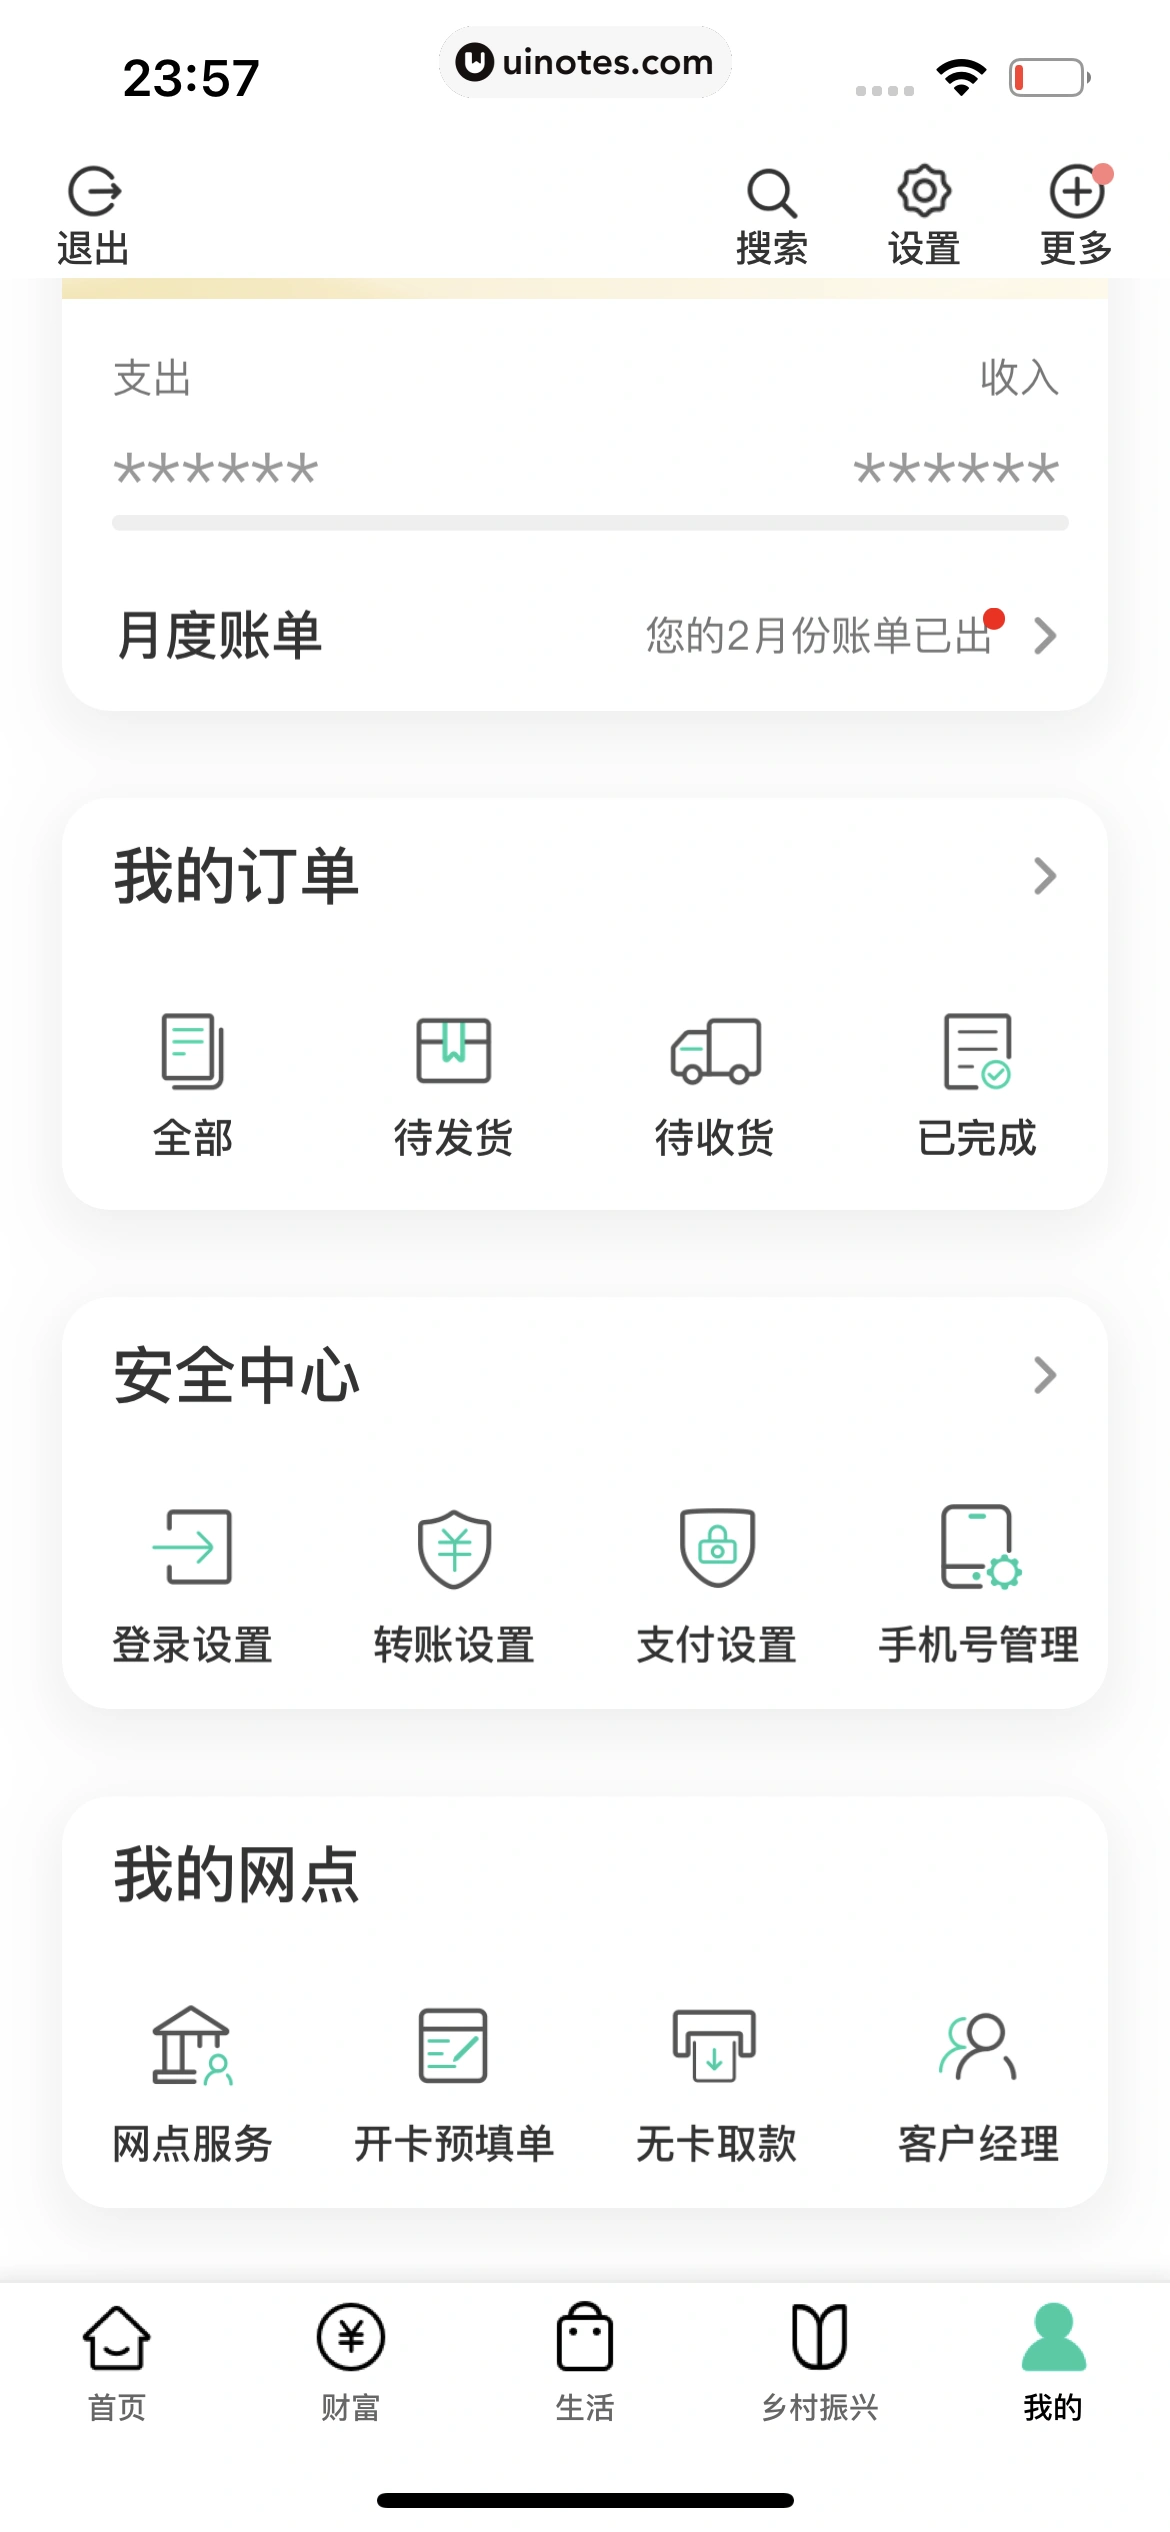 中国农业银行 App 截图 241 - UI Notes